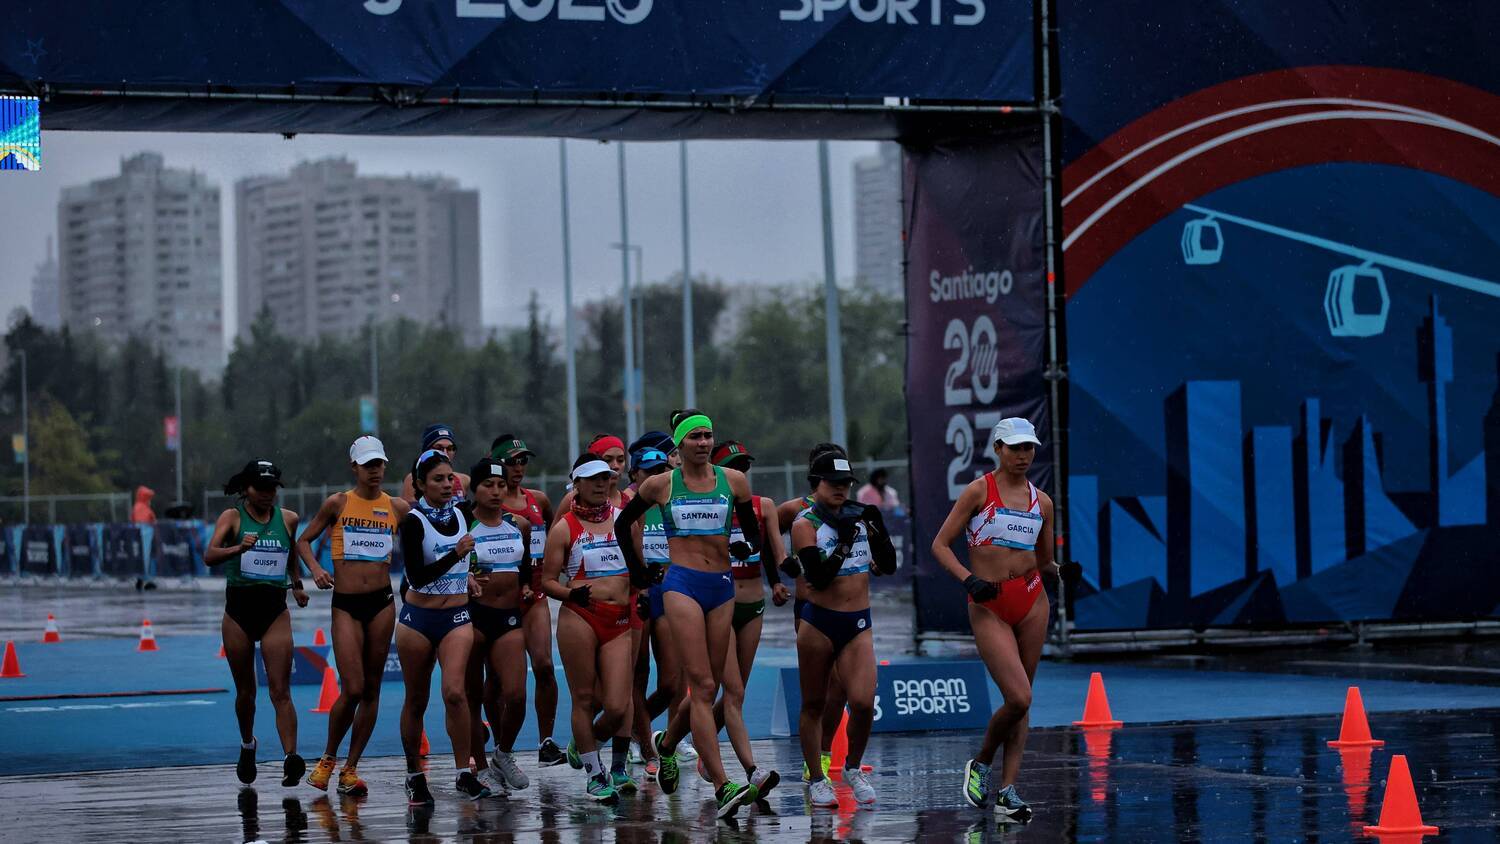 Jogos Pan-Americanos: México vence o Chile e conquista medalha inédita -  Planeta Futebol Feminino